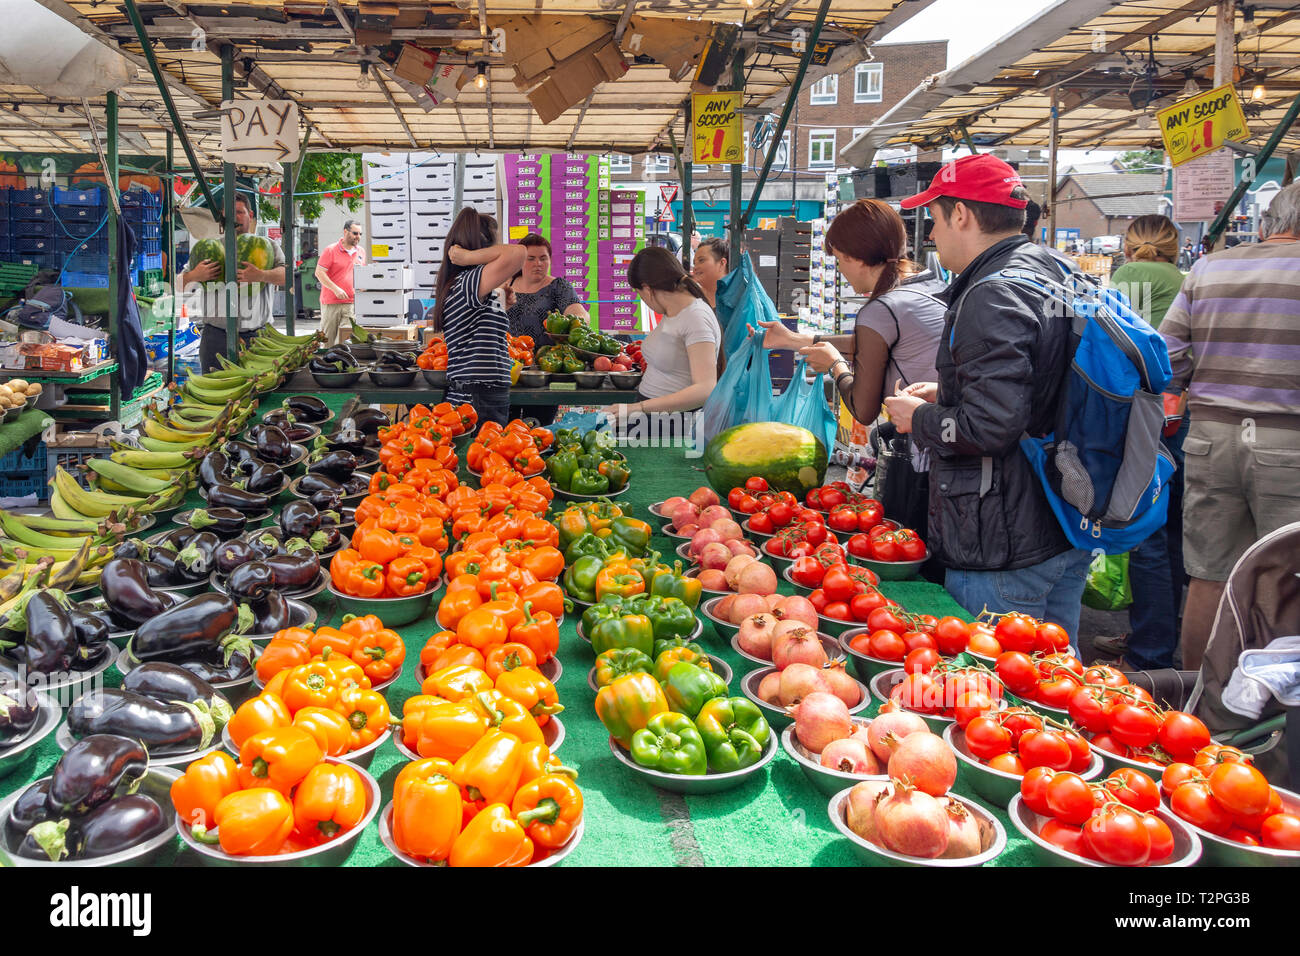 Fruit and vegetable stall, Lewisham Market, Lewisham High Street,Lewisham, London Borough of Lewisham, Greater London, England, United Kingdom Stock Photo